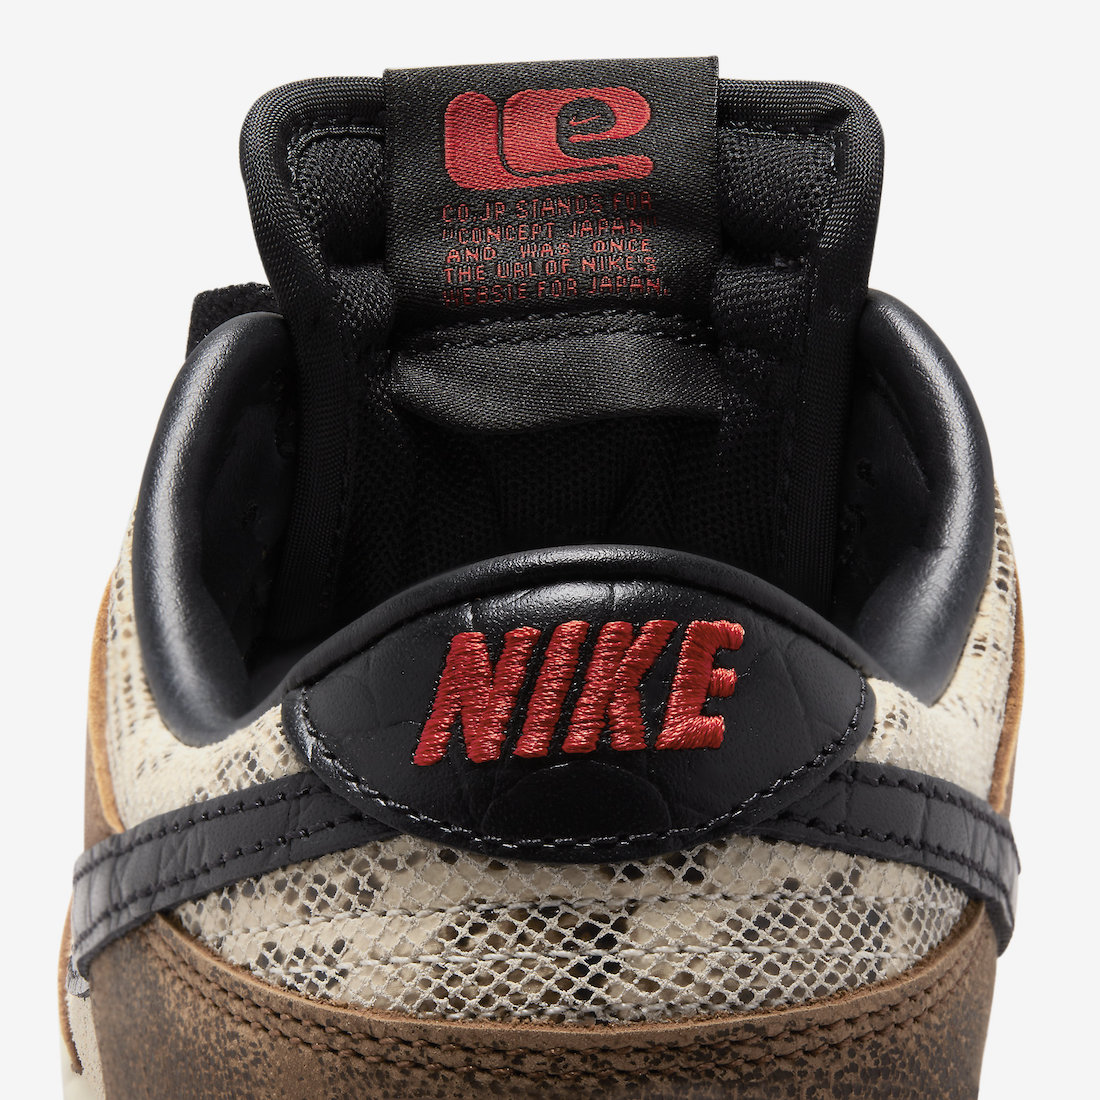 Nike Dunk Low CO.JP FJ5434-120 Release Info